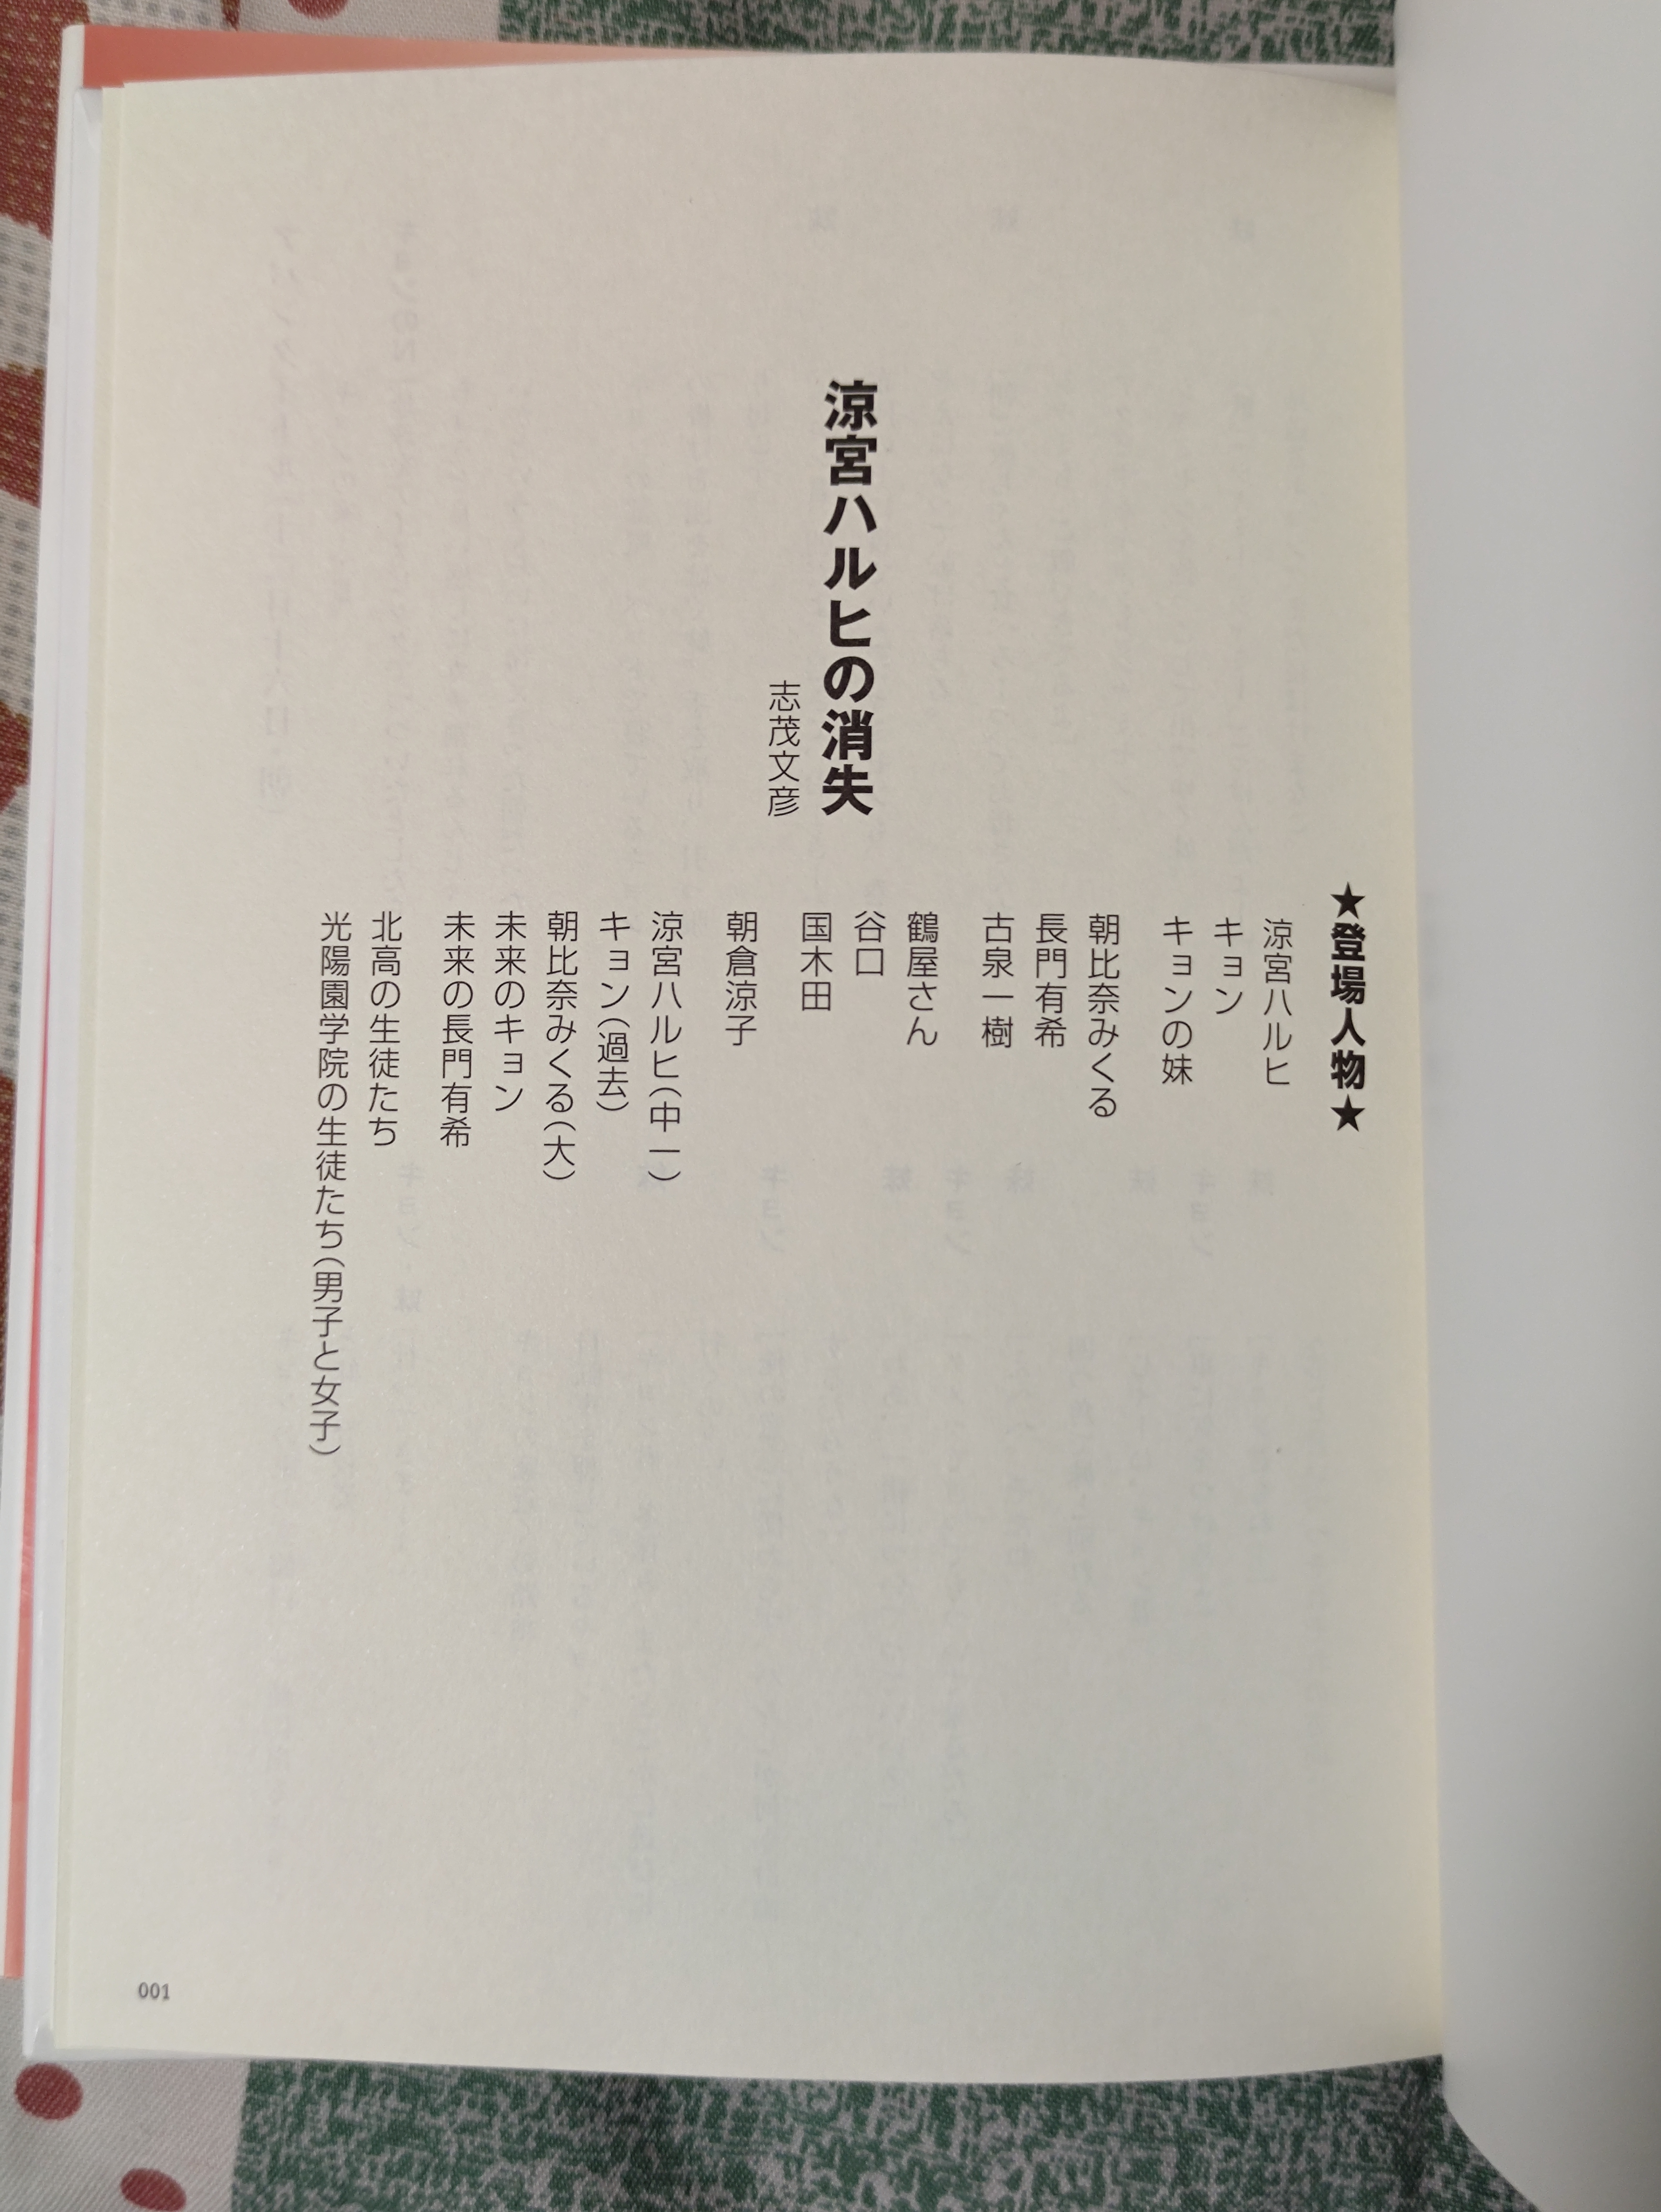 《凉宫春日的消失》官方公式书、脚本集